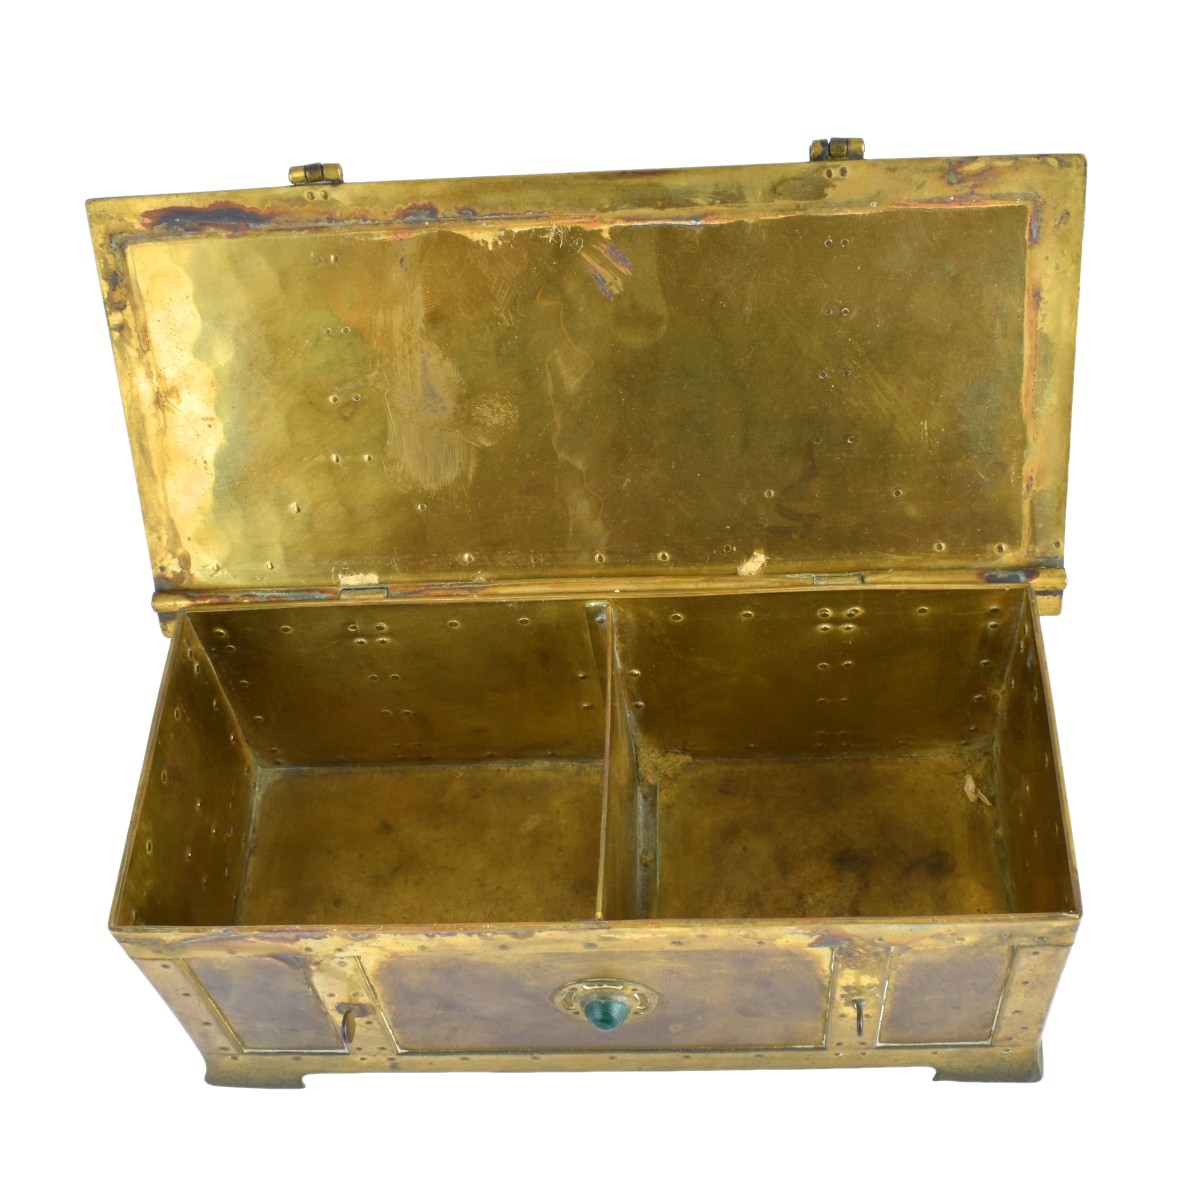 Brass Box with Malachite Setting & Malachite Stone